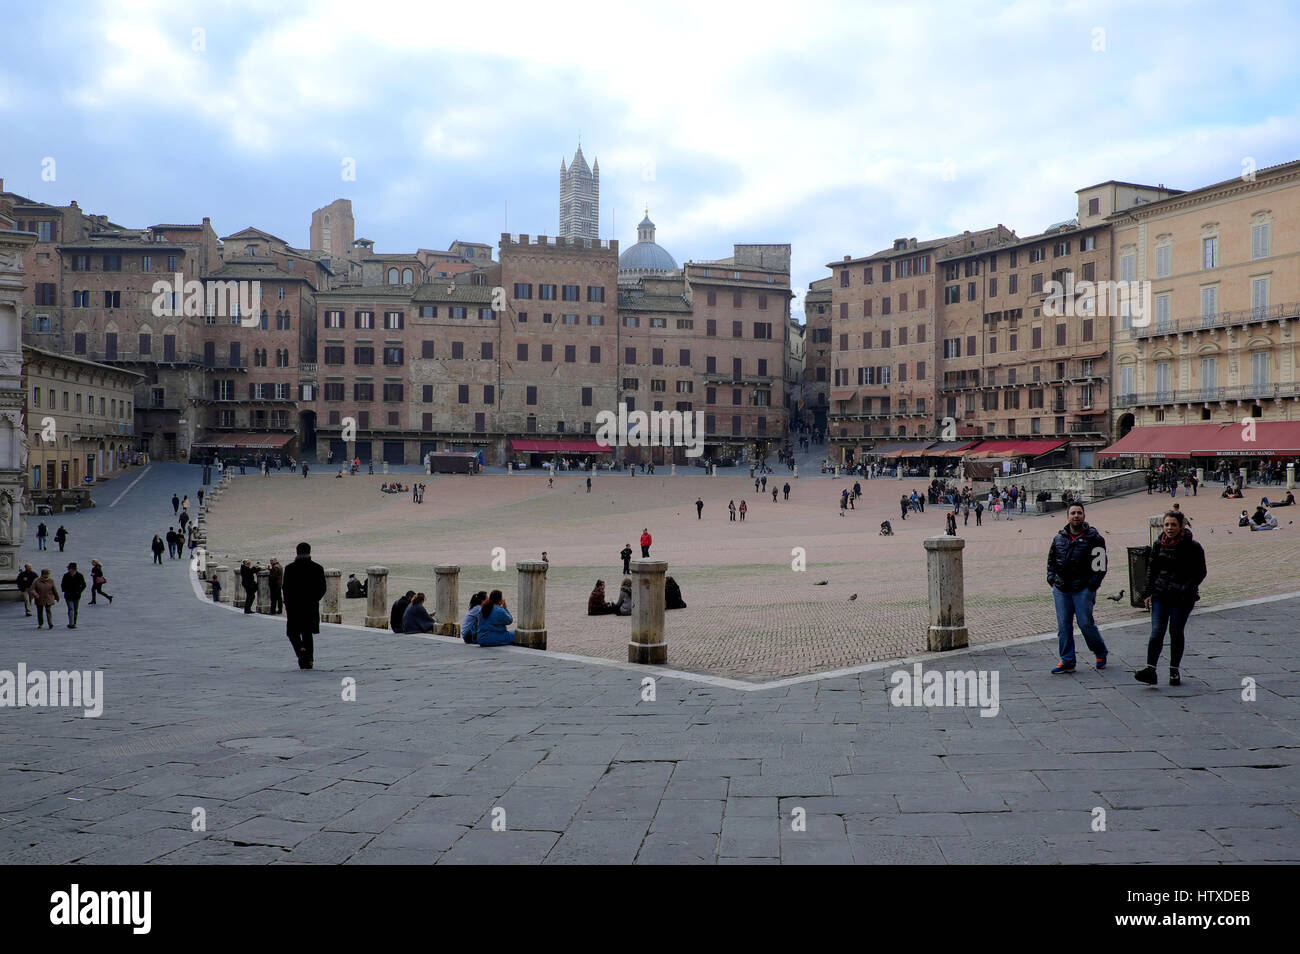 Piazza del Campo, Sienne, Toscane, Italie, Europe - espace public principal du centre historique de la vieille ville, place médiévale où Palio de Sienne est tenu Banque D'Images